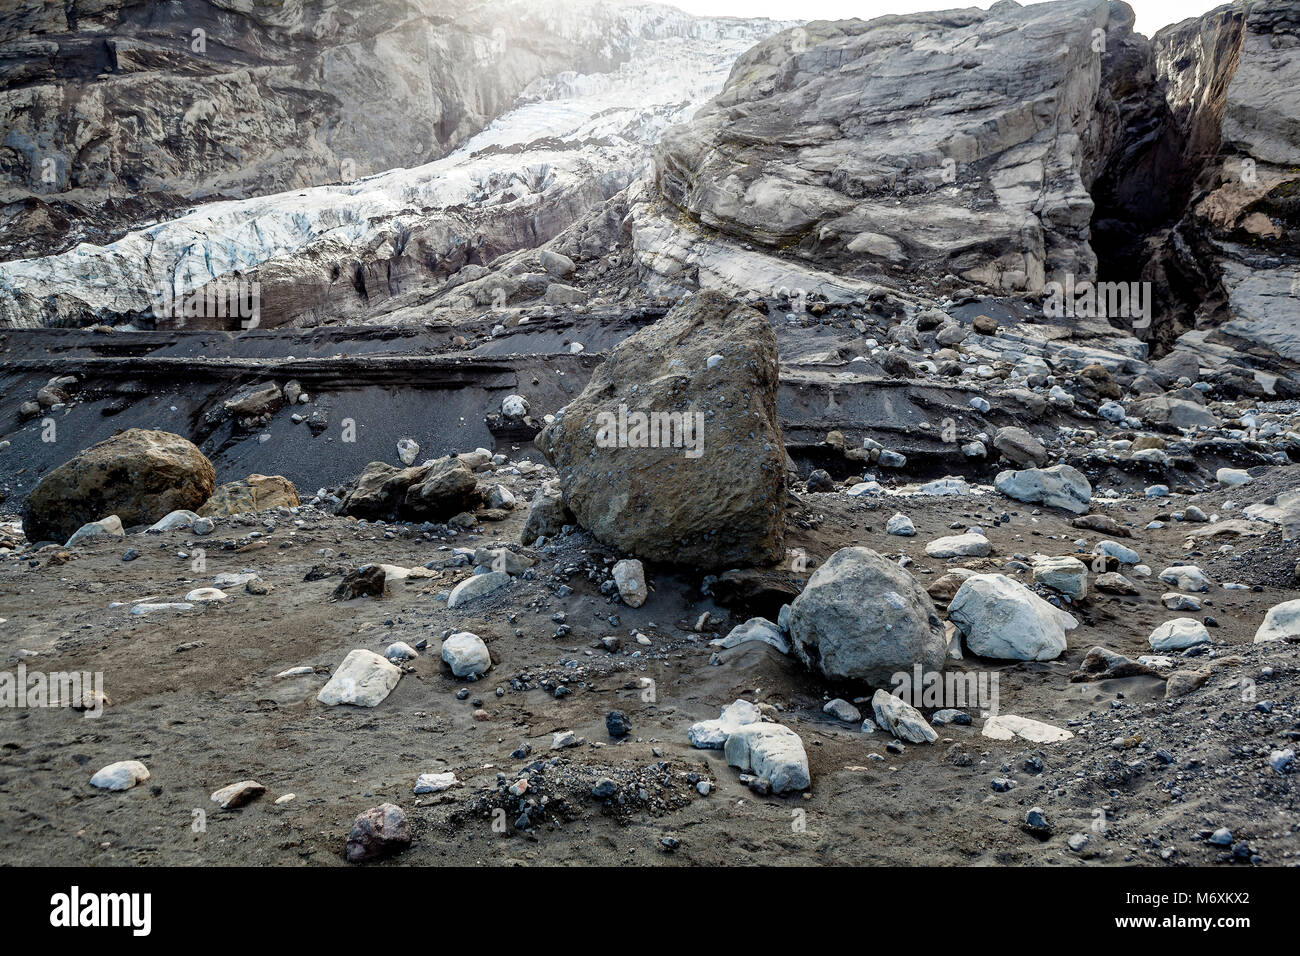 Ceneri vulcaniche e rocce, Gigjokull ghiacciaio, Islanda Foto Stock